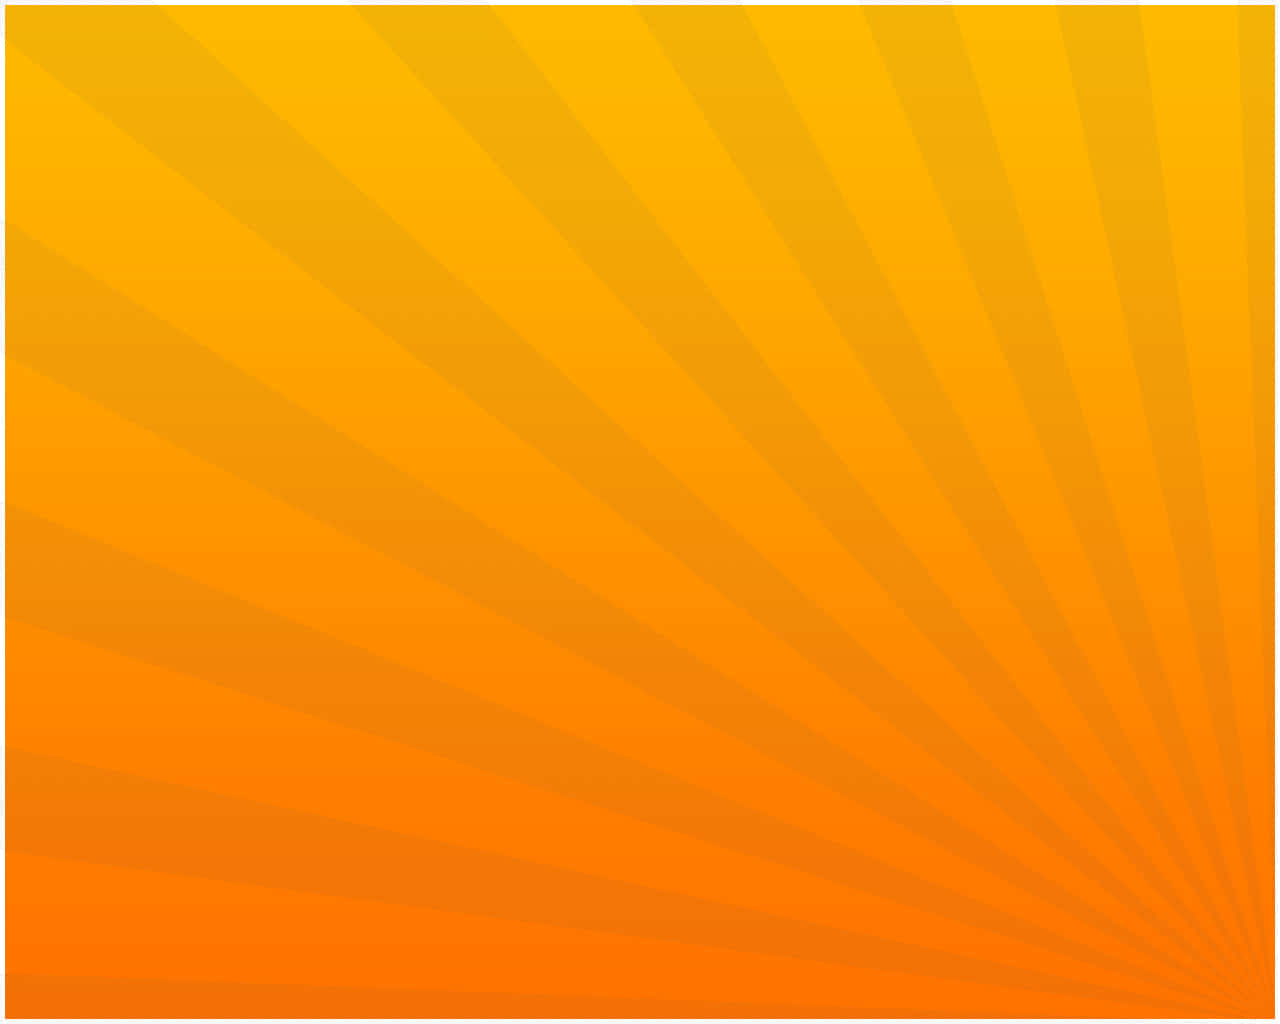 An Orange Sunburst Background Wallpaper